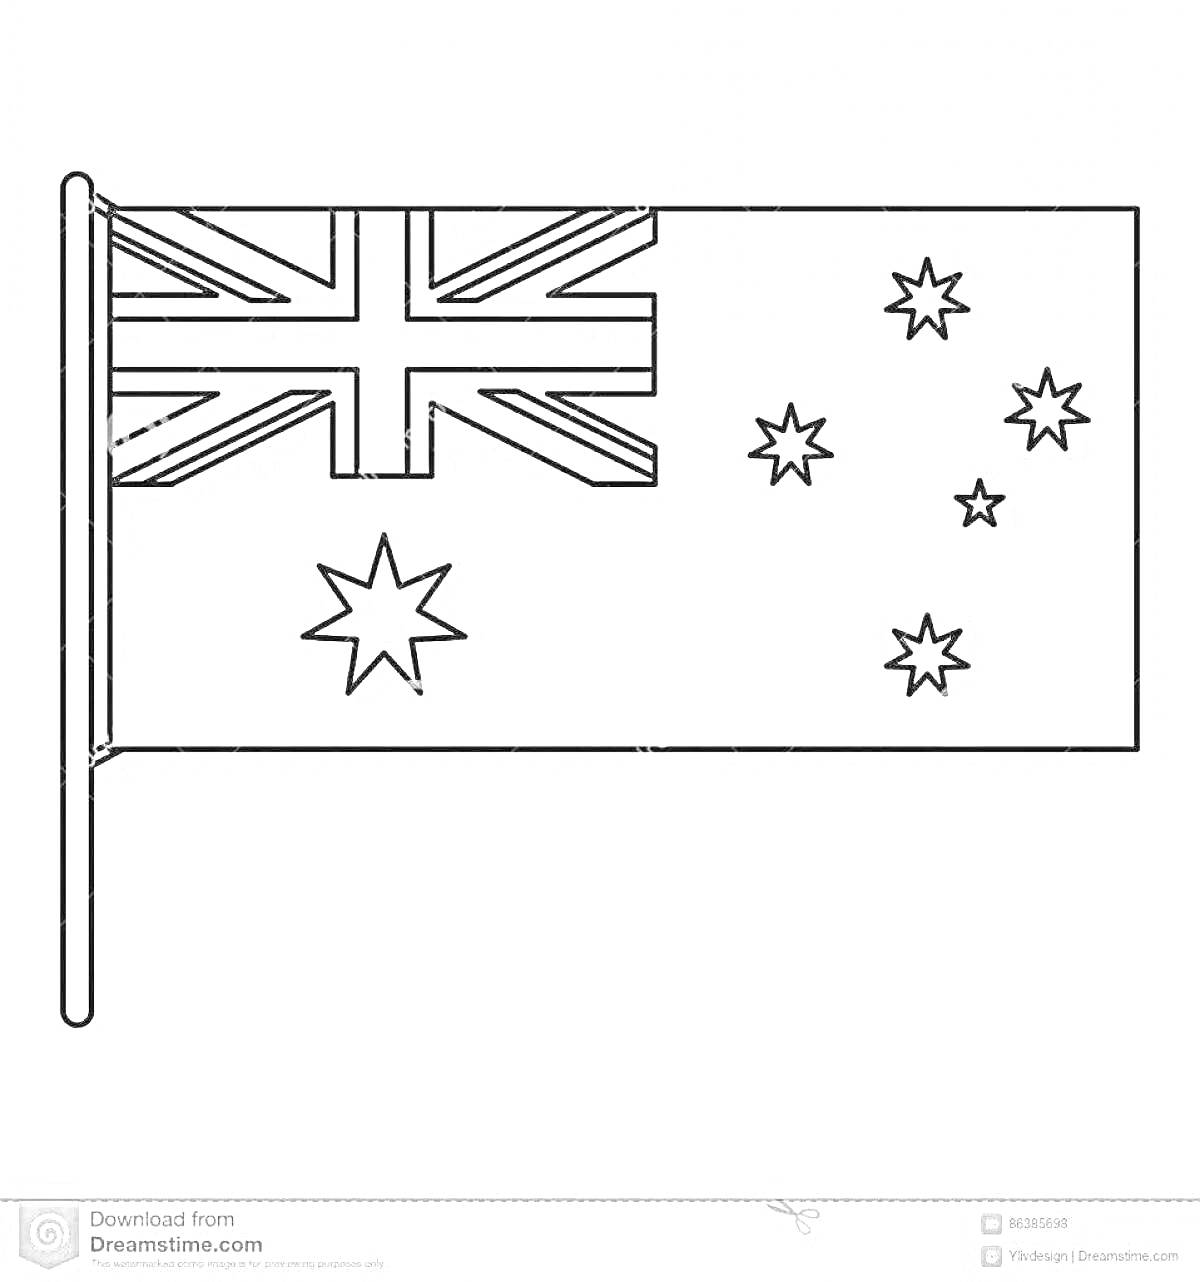 Раскраска с изображением флага Австралии с шестью звездами и британским флагом в верхнем левом углу.